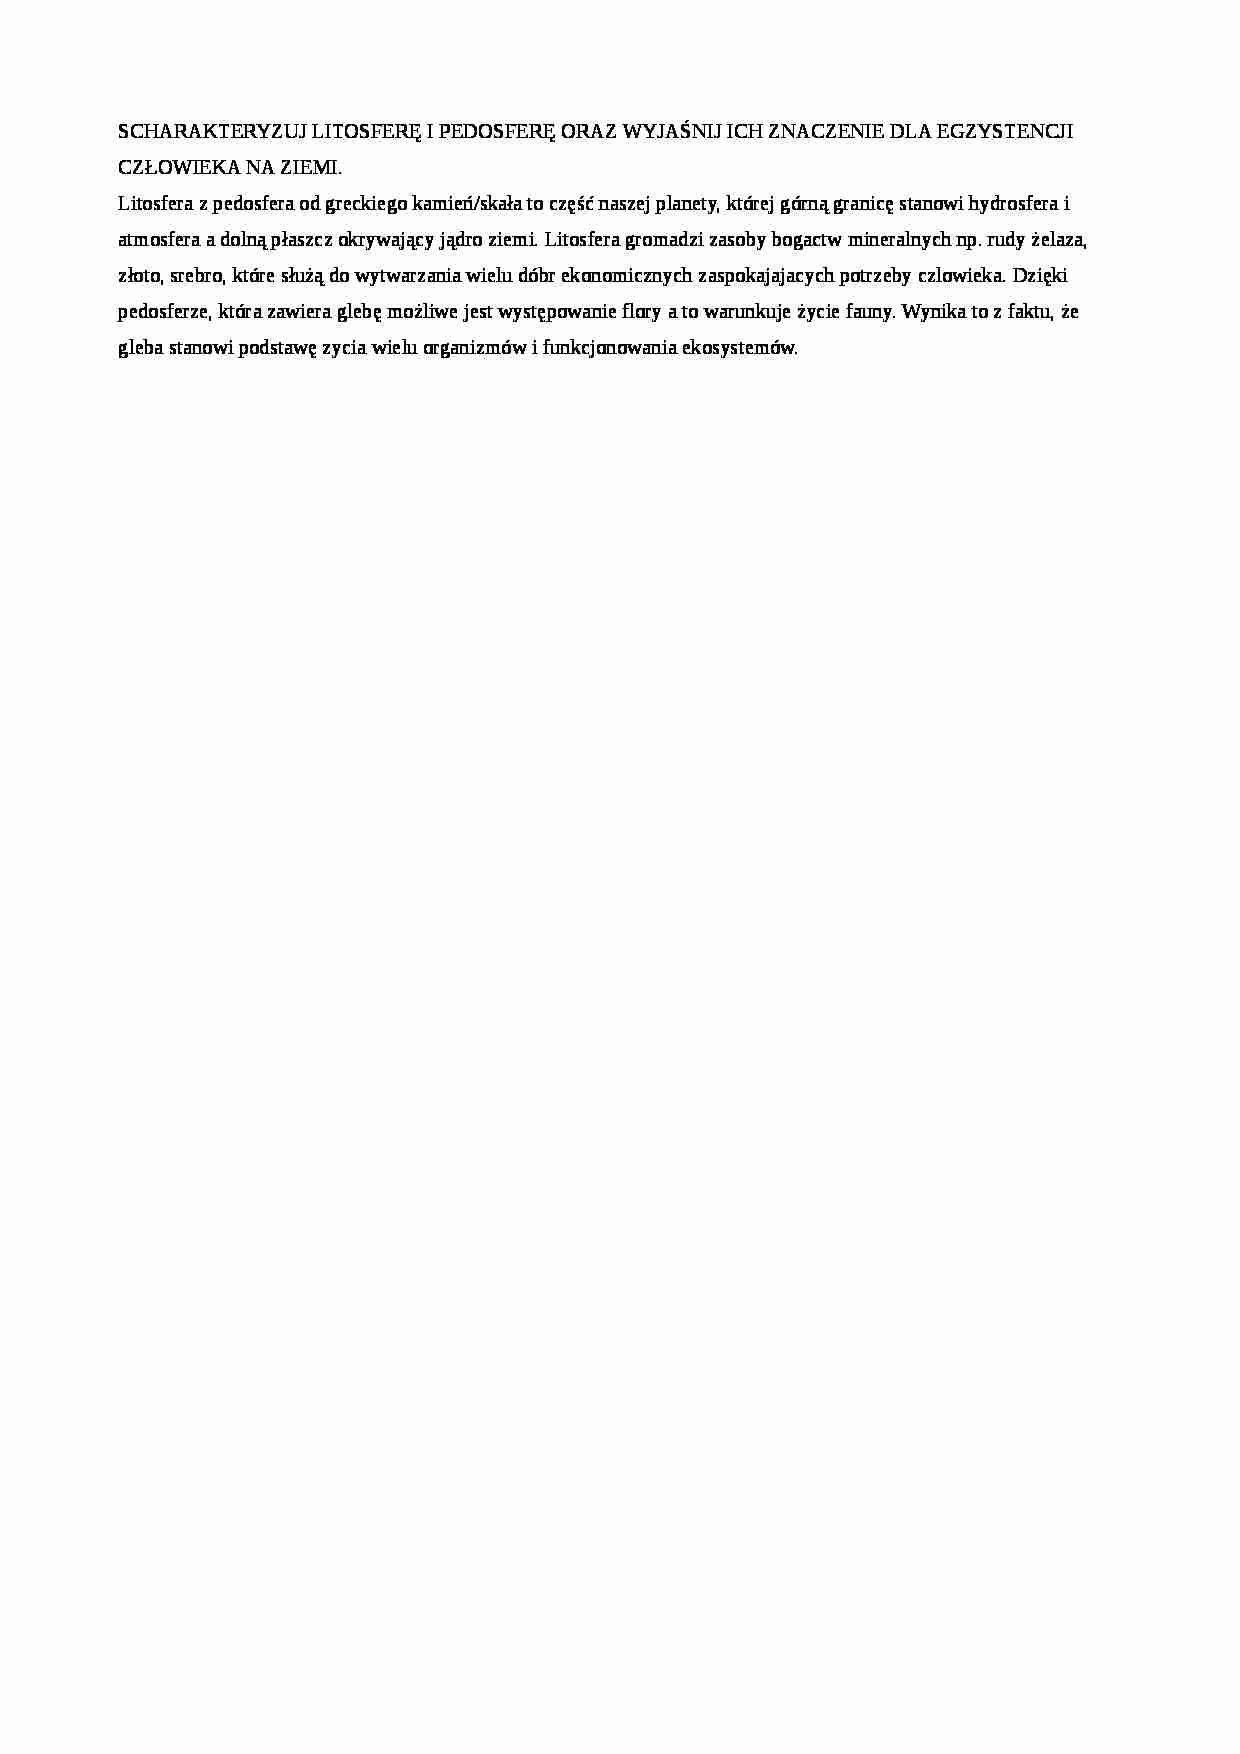 Litosfera i pedosfera - omówienie  - strona 1